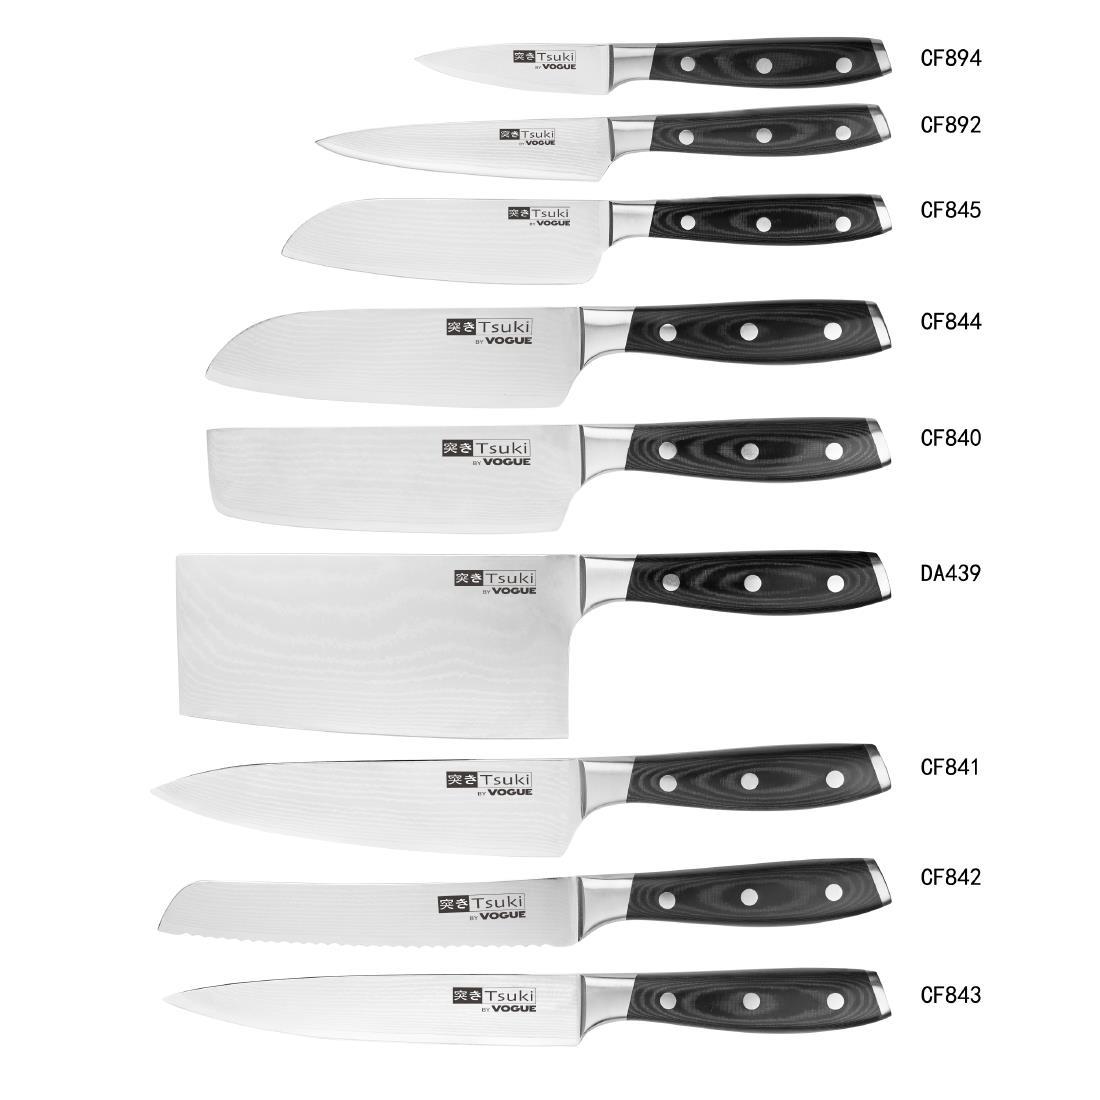 Vogue Tsuki Series 7 Santoku Knife 18cm - CF844  - 5